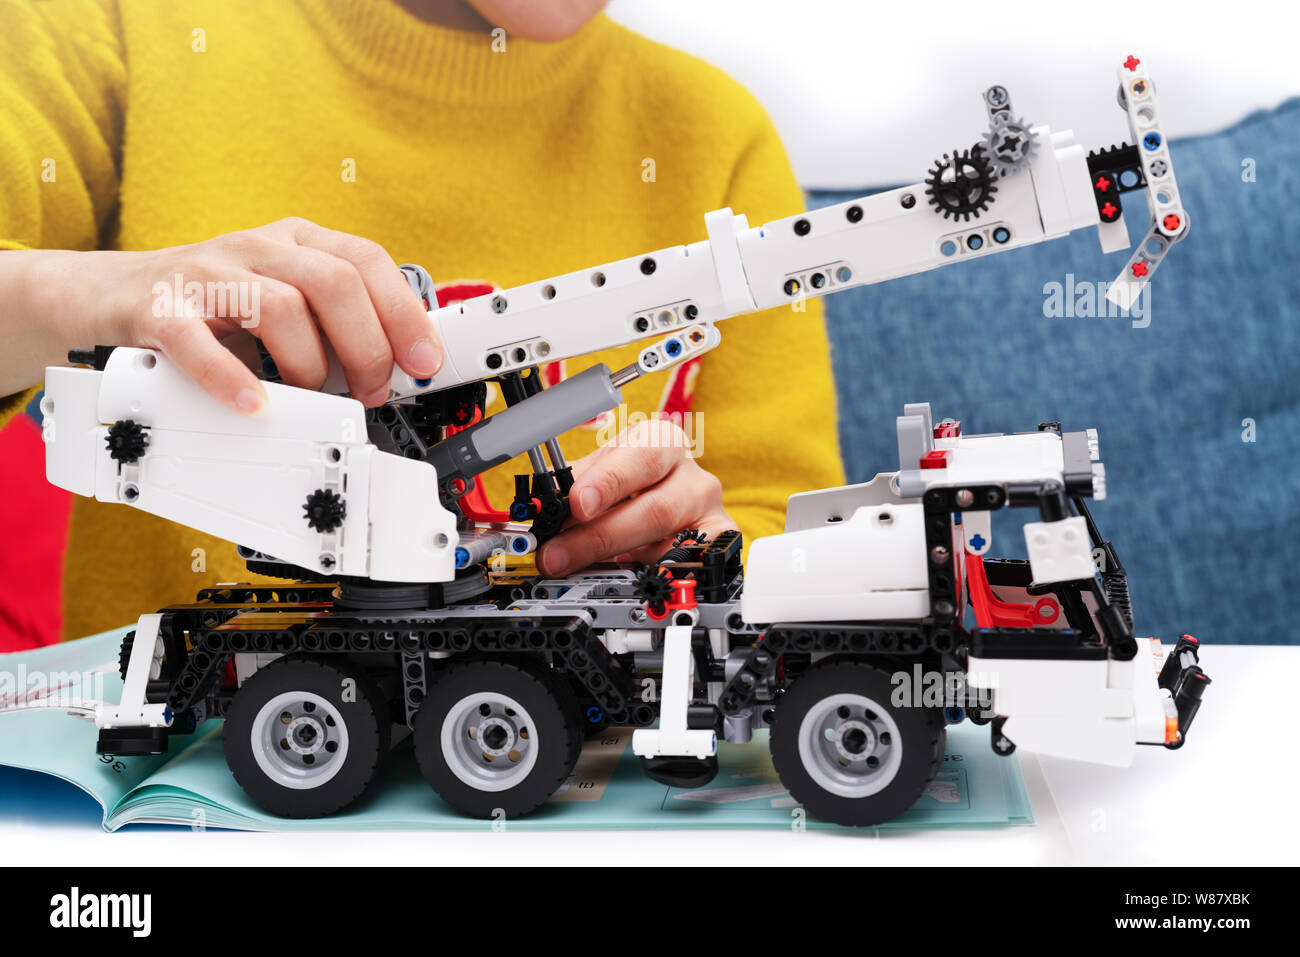 Auto Bausatz, Frau zusammen eine sehr komplizierte und gemeinsamen Auto Lkw  Spielzeug Stockfotografie - Alamy